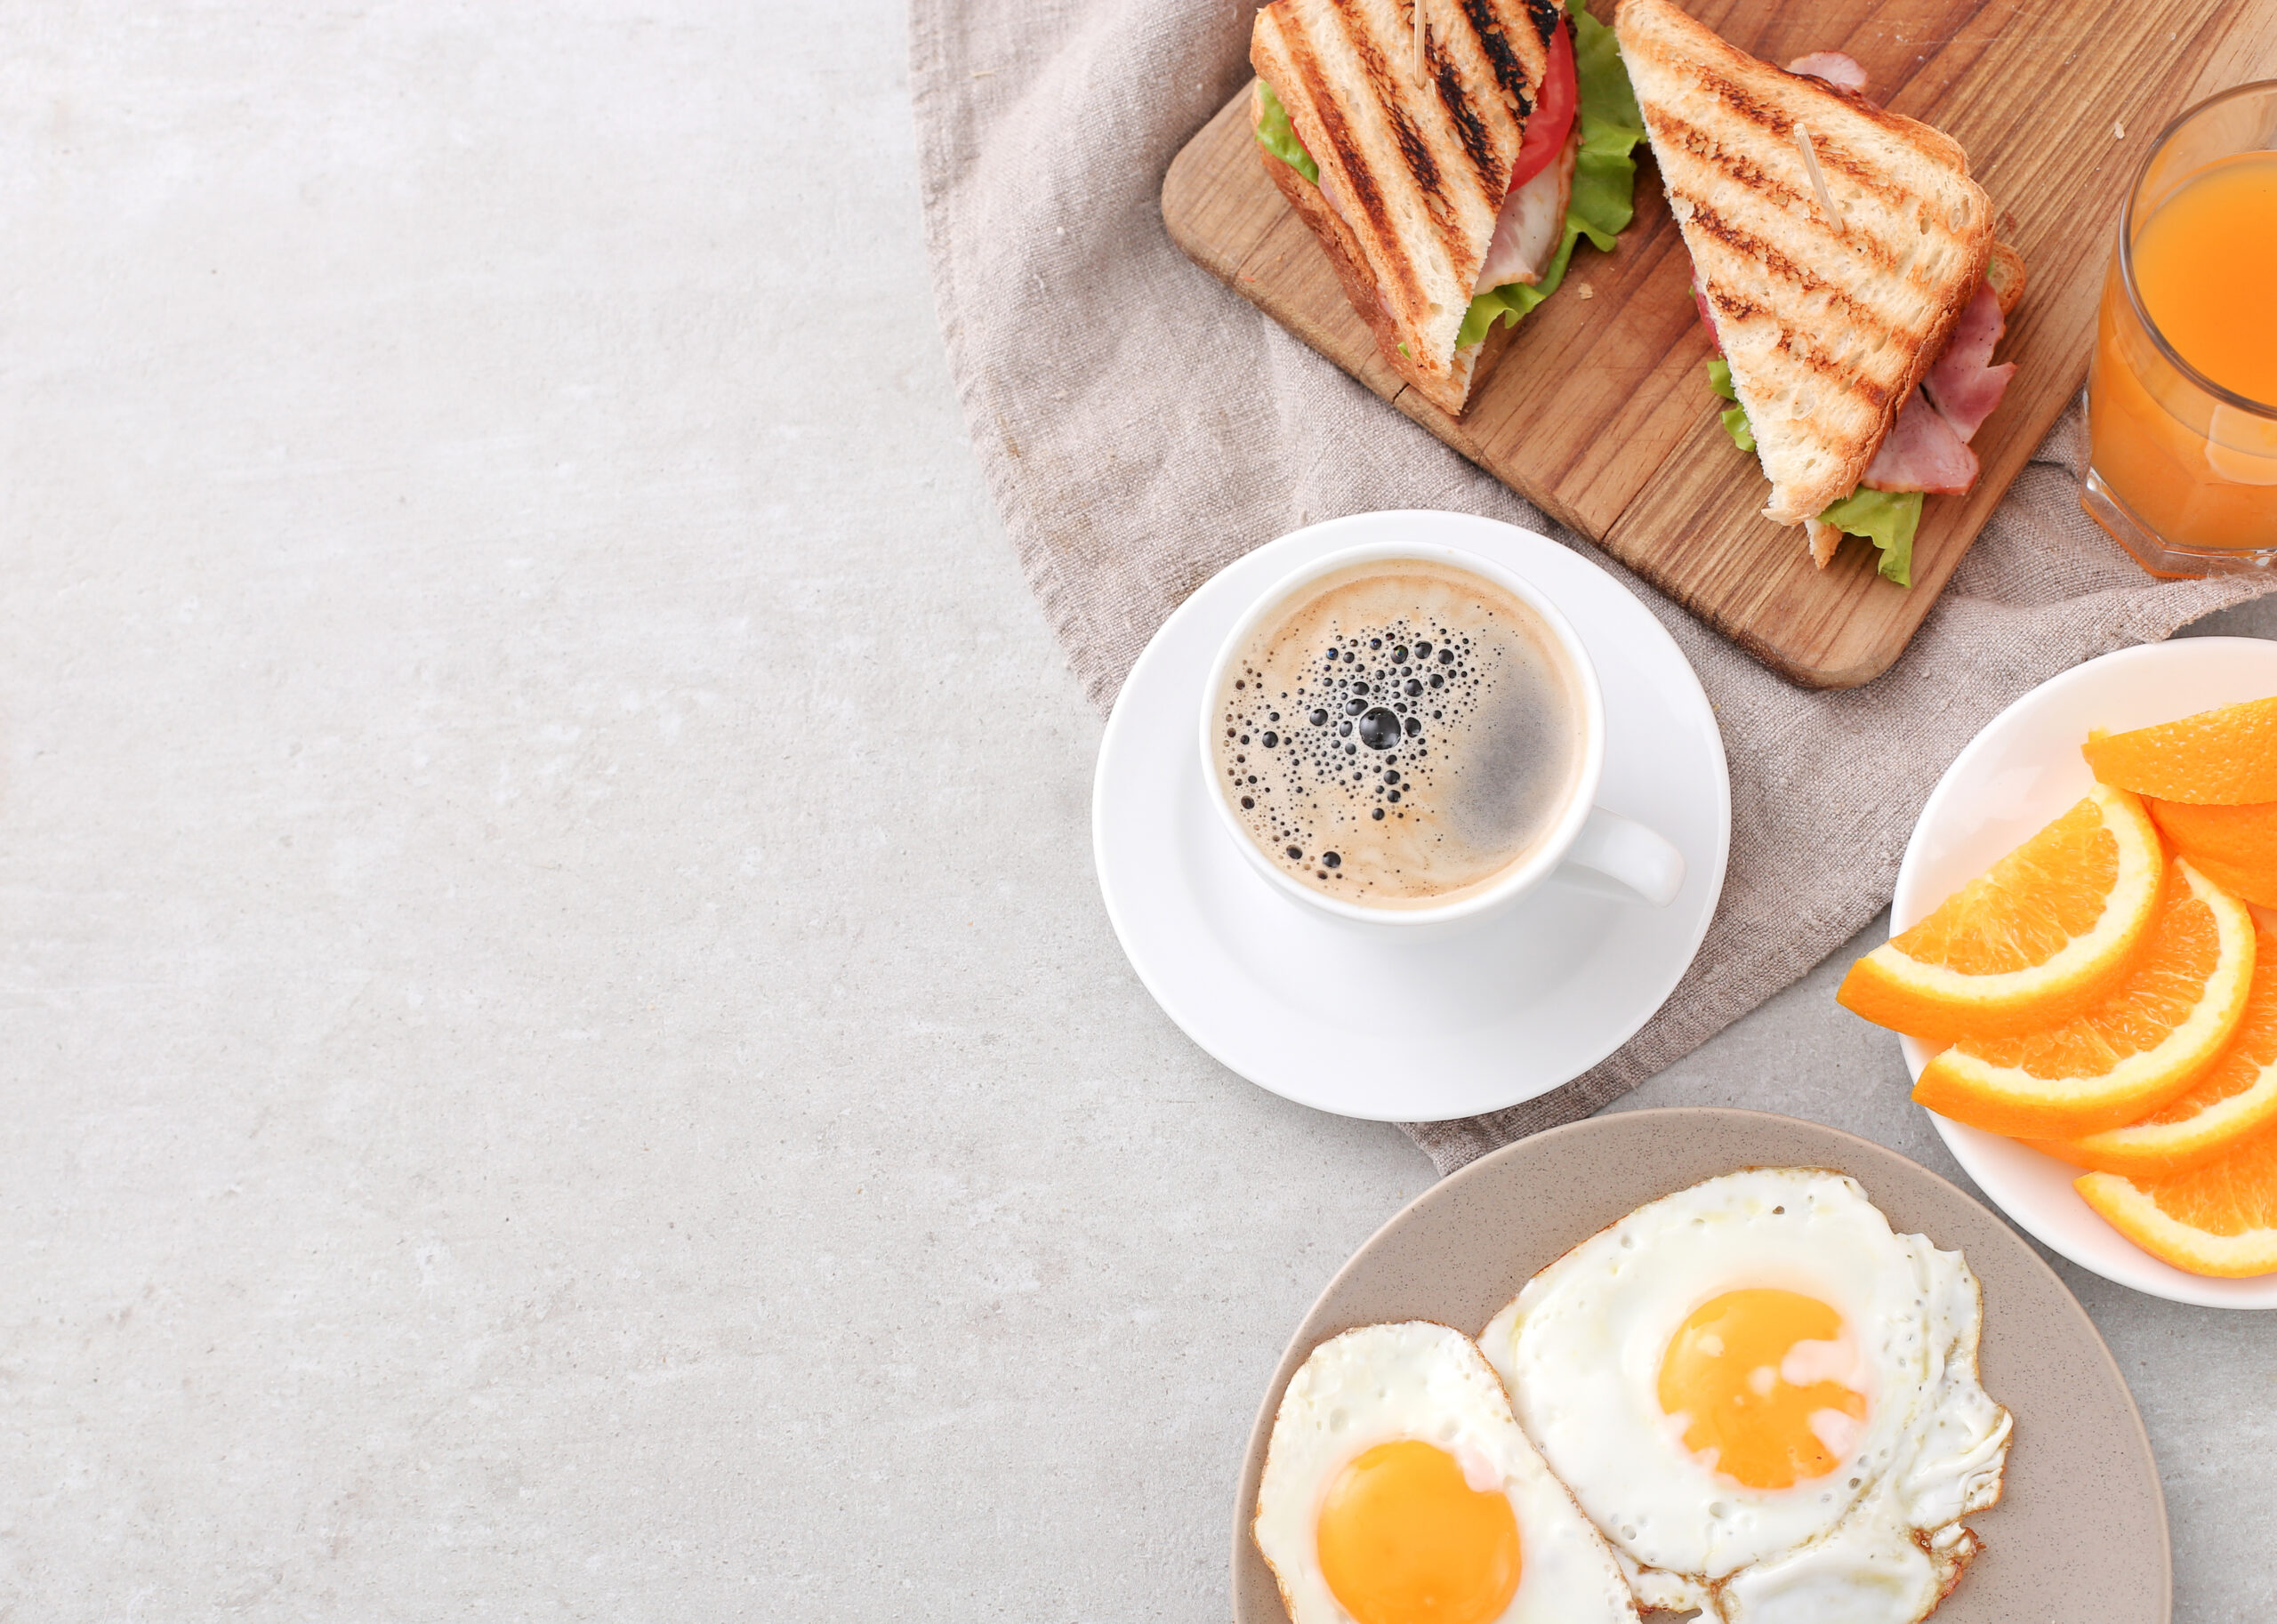 Vacaciones con los peques en casa: tips para un desayuno nutritivo